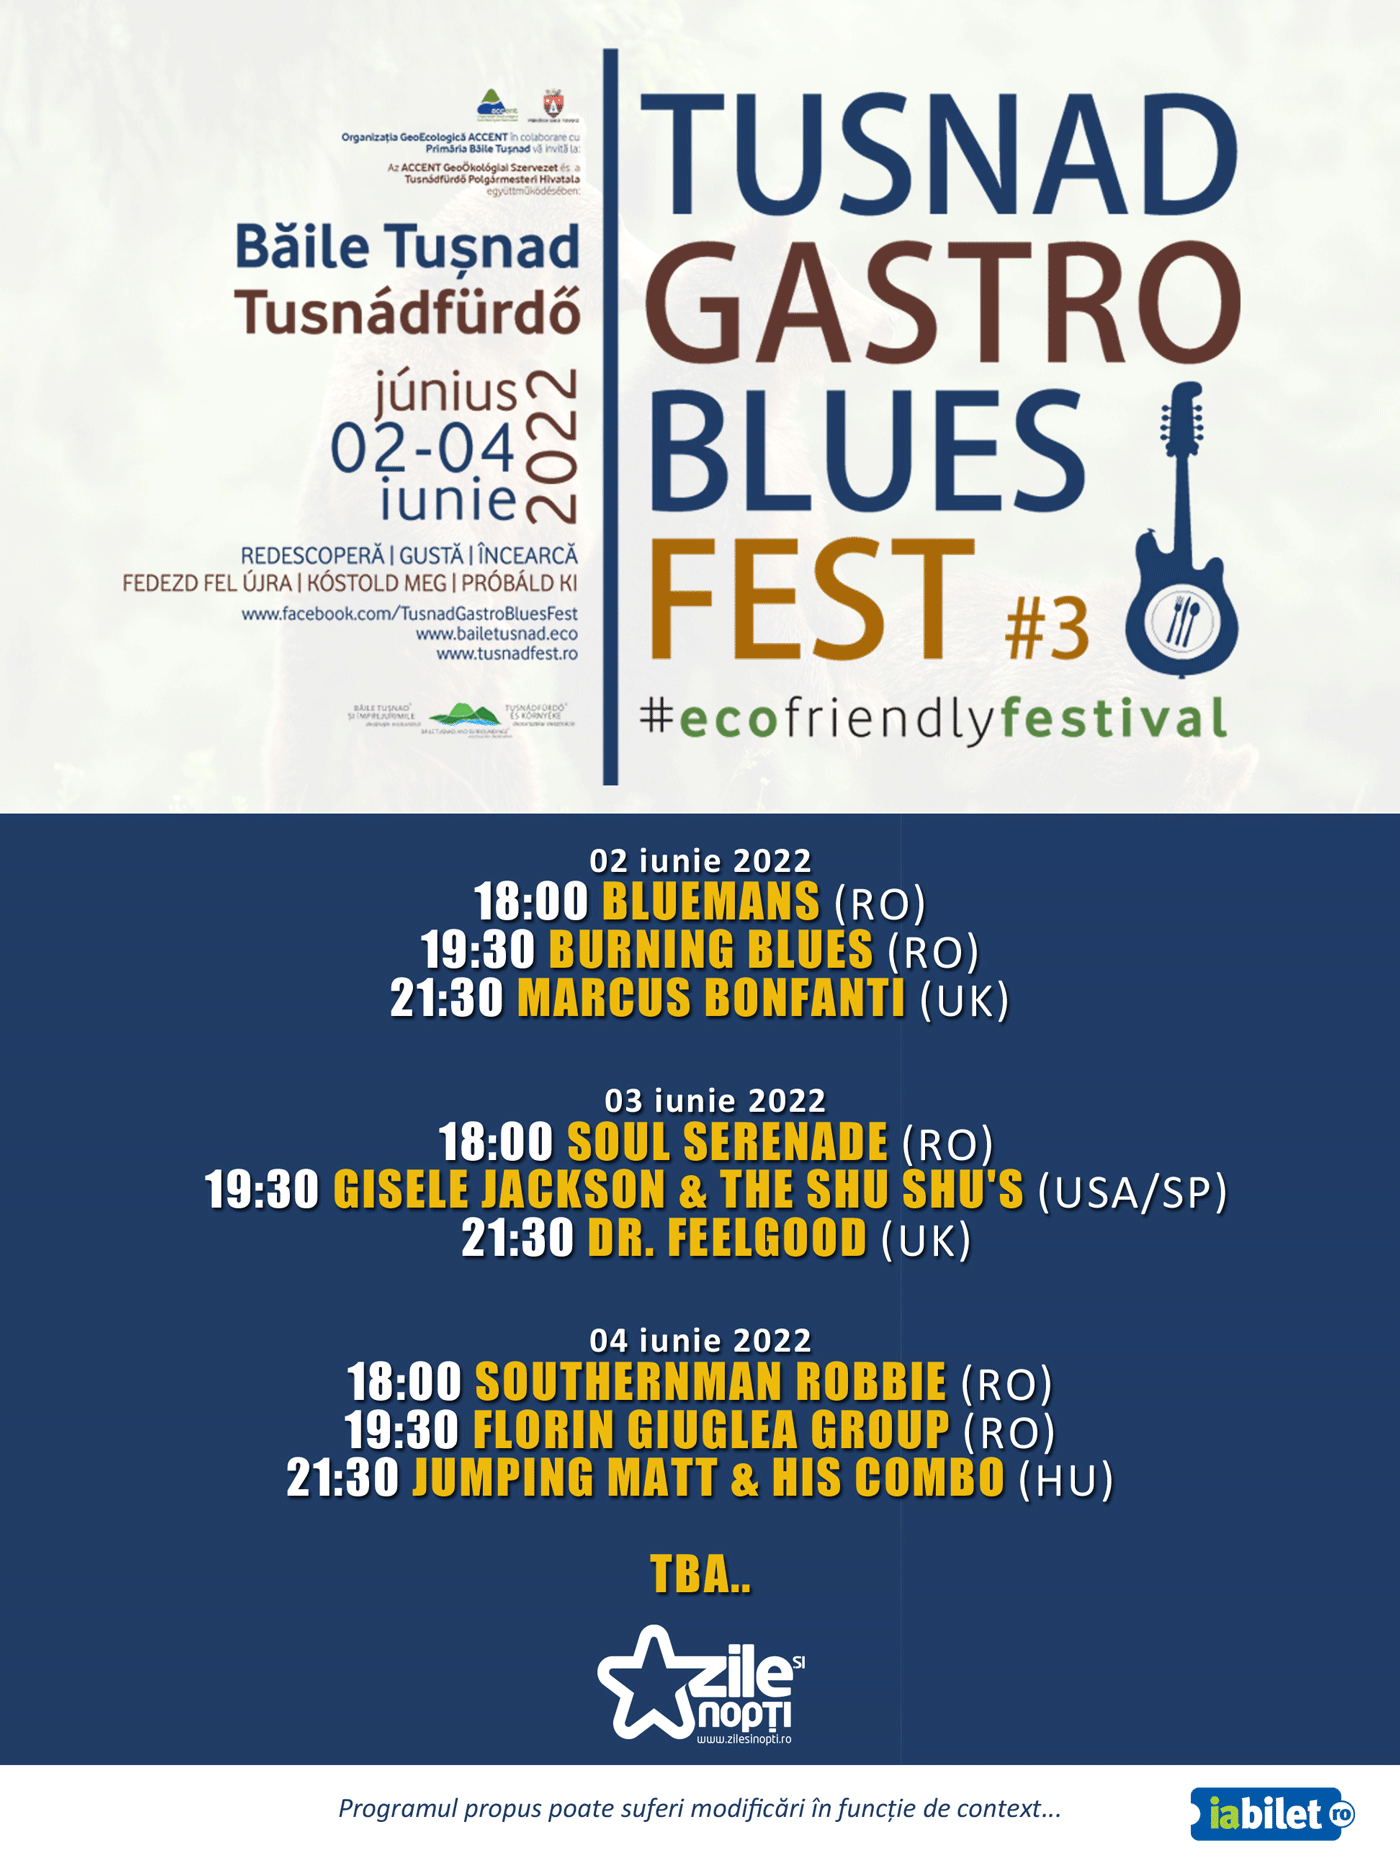 TUSNAD GASTRO BLUES FEST - Băile Tușnad | 02-04 iunie 2022